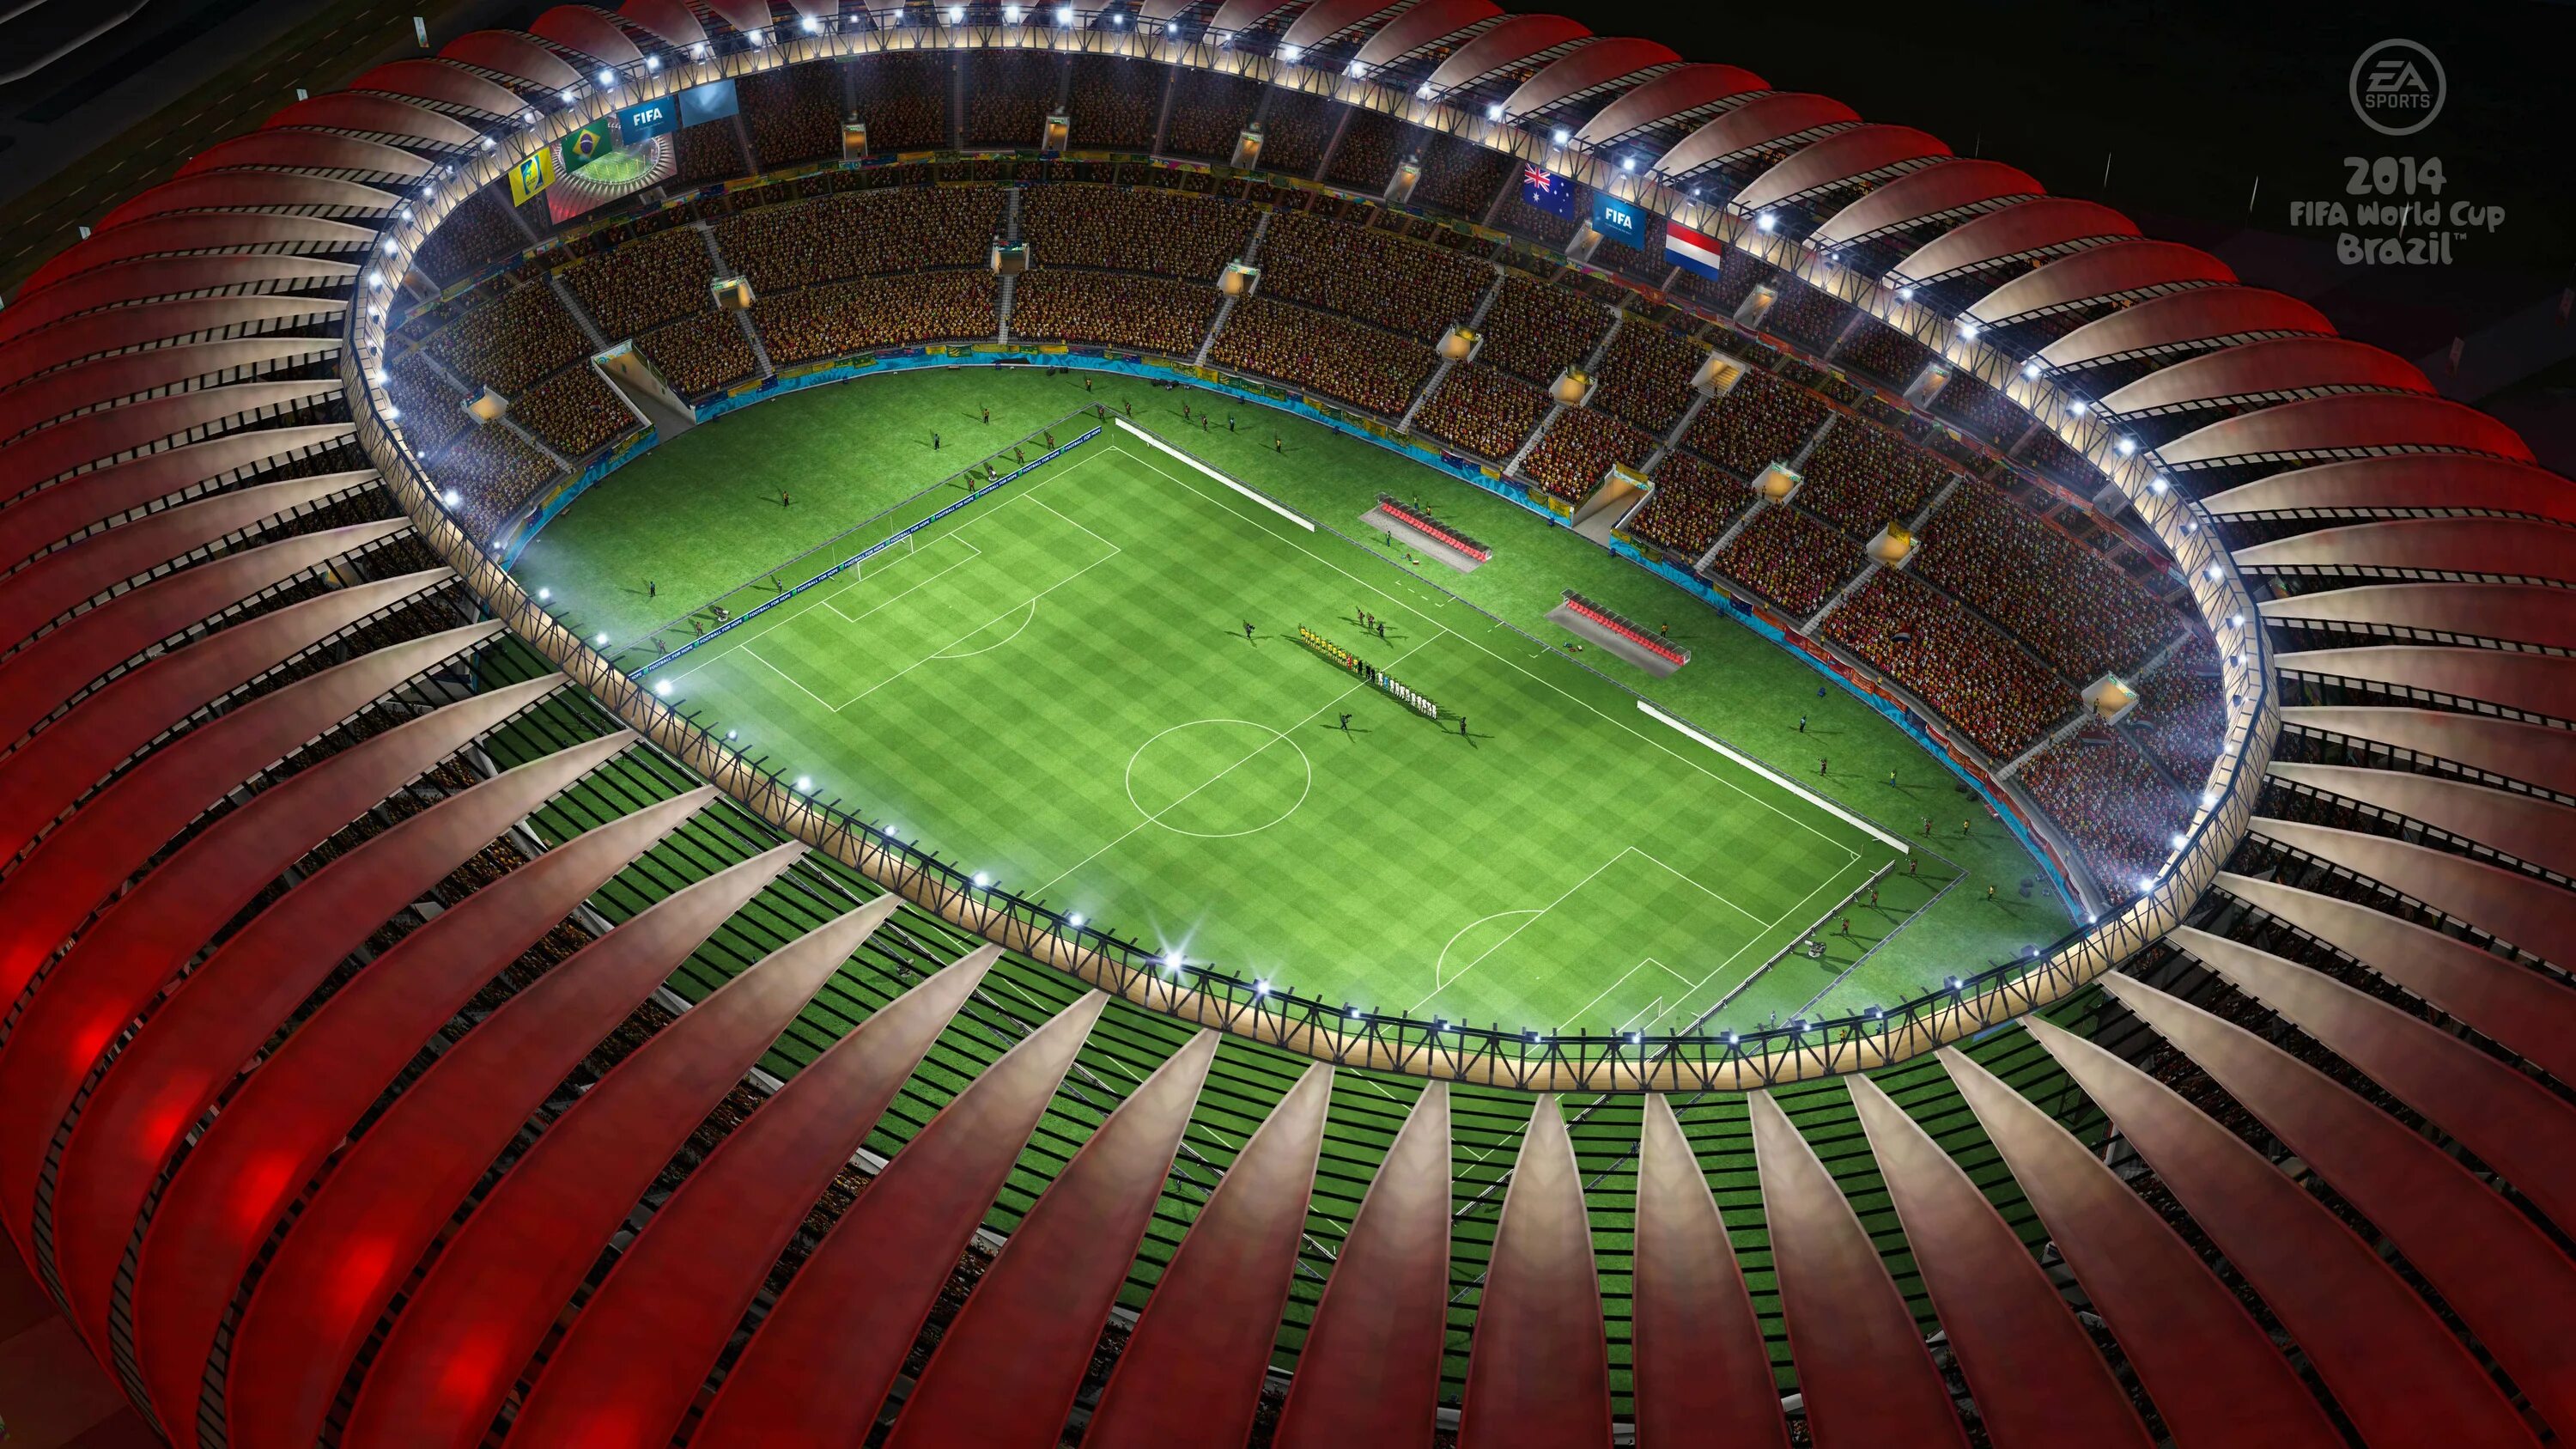 Стадионы 2014. Арена Бейра Рио. Футбольный стадион Бразилии. Футбольный стадион Бразилия 2022. 2014 FIFA World Cup Brazil.